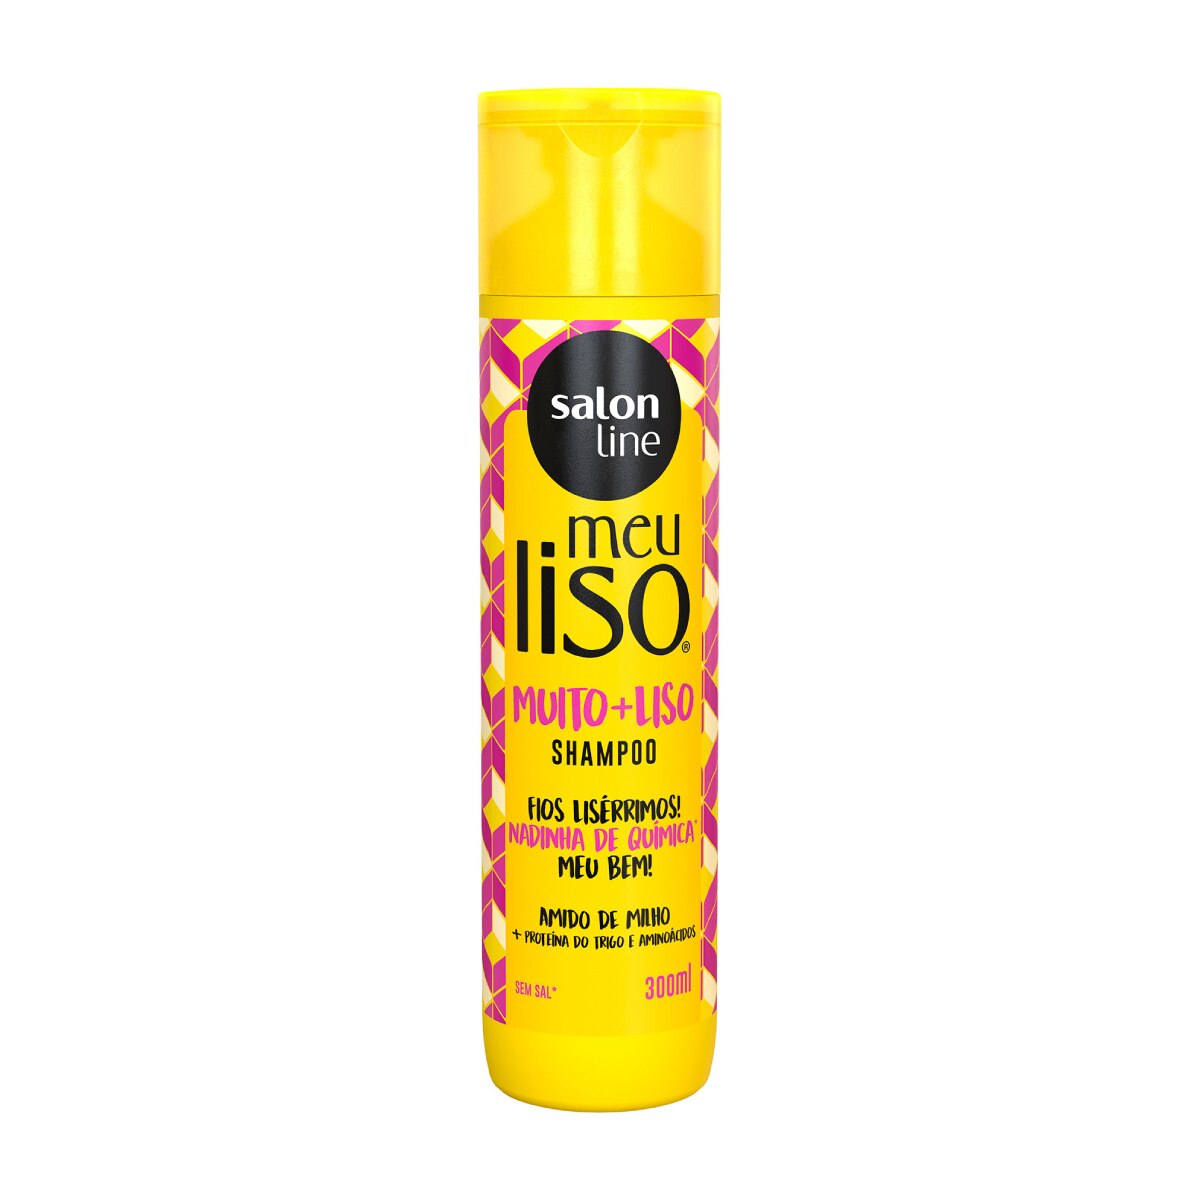 Shampoo Meu Liso Salon Line #Muito + Liso Amido de Milho 300ml